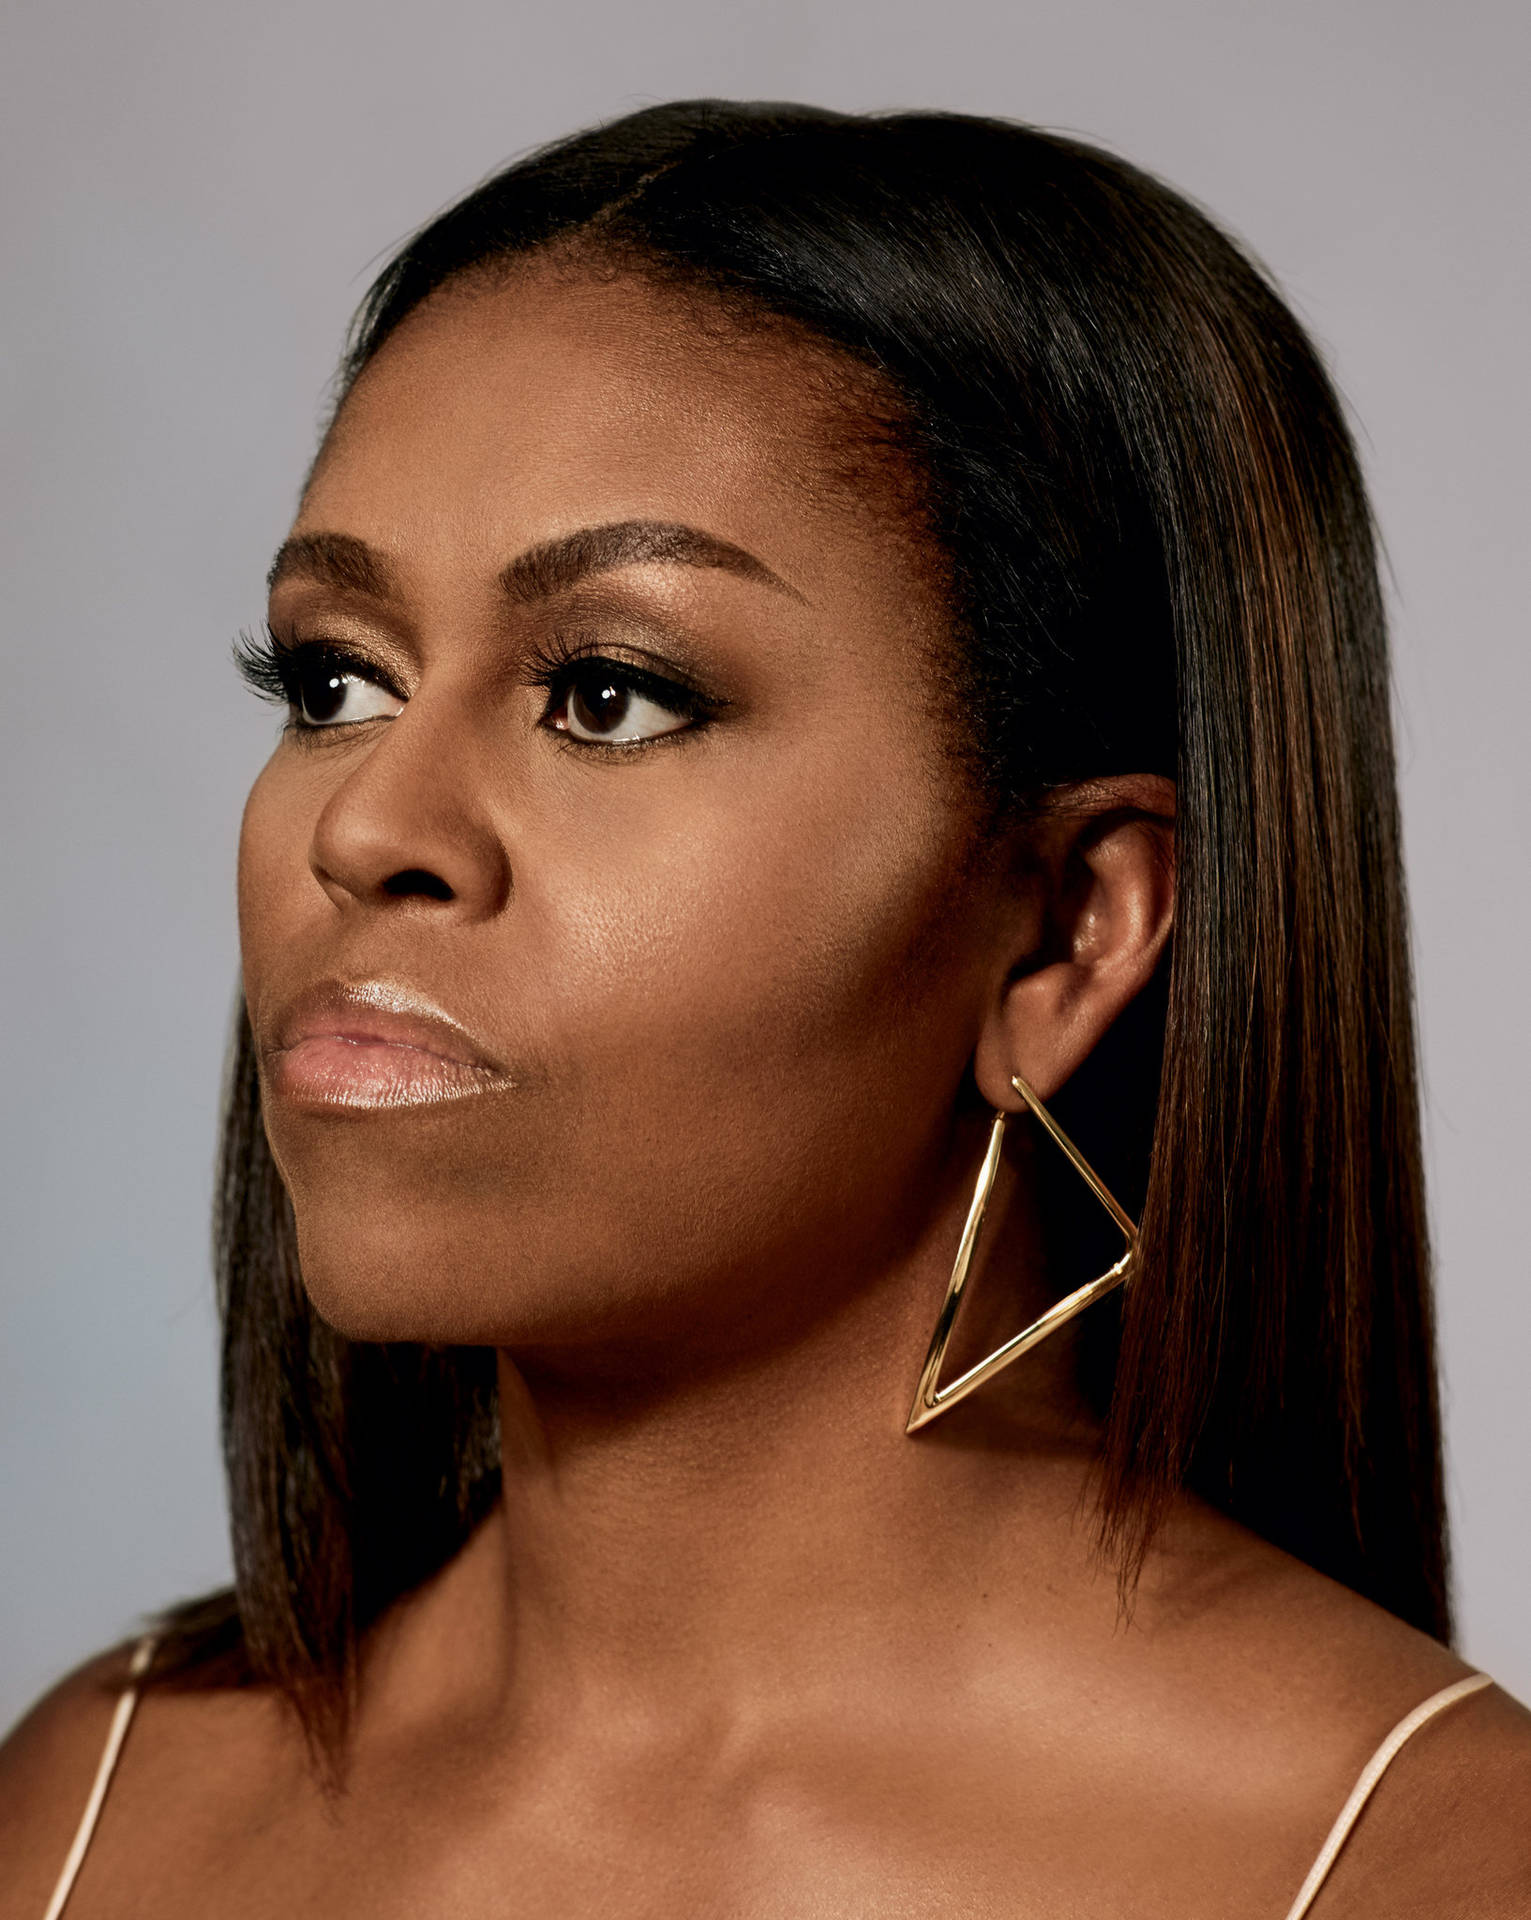 Michelle Obama Side Profile Background